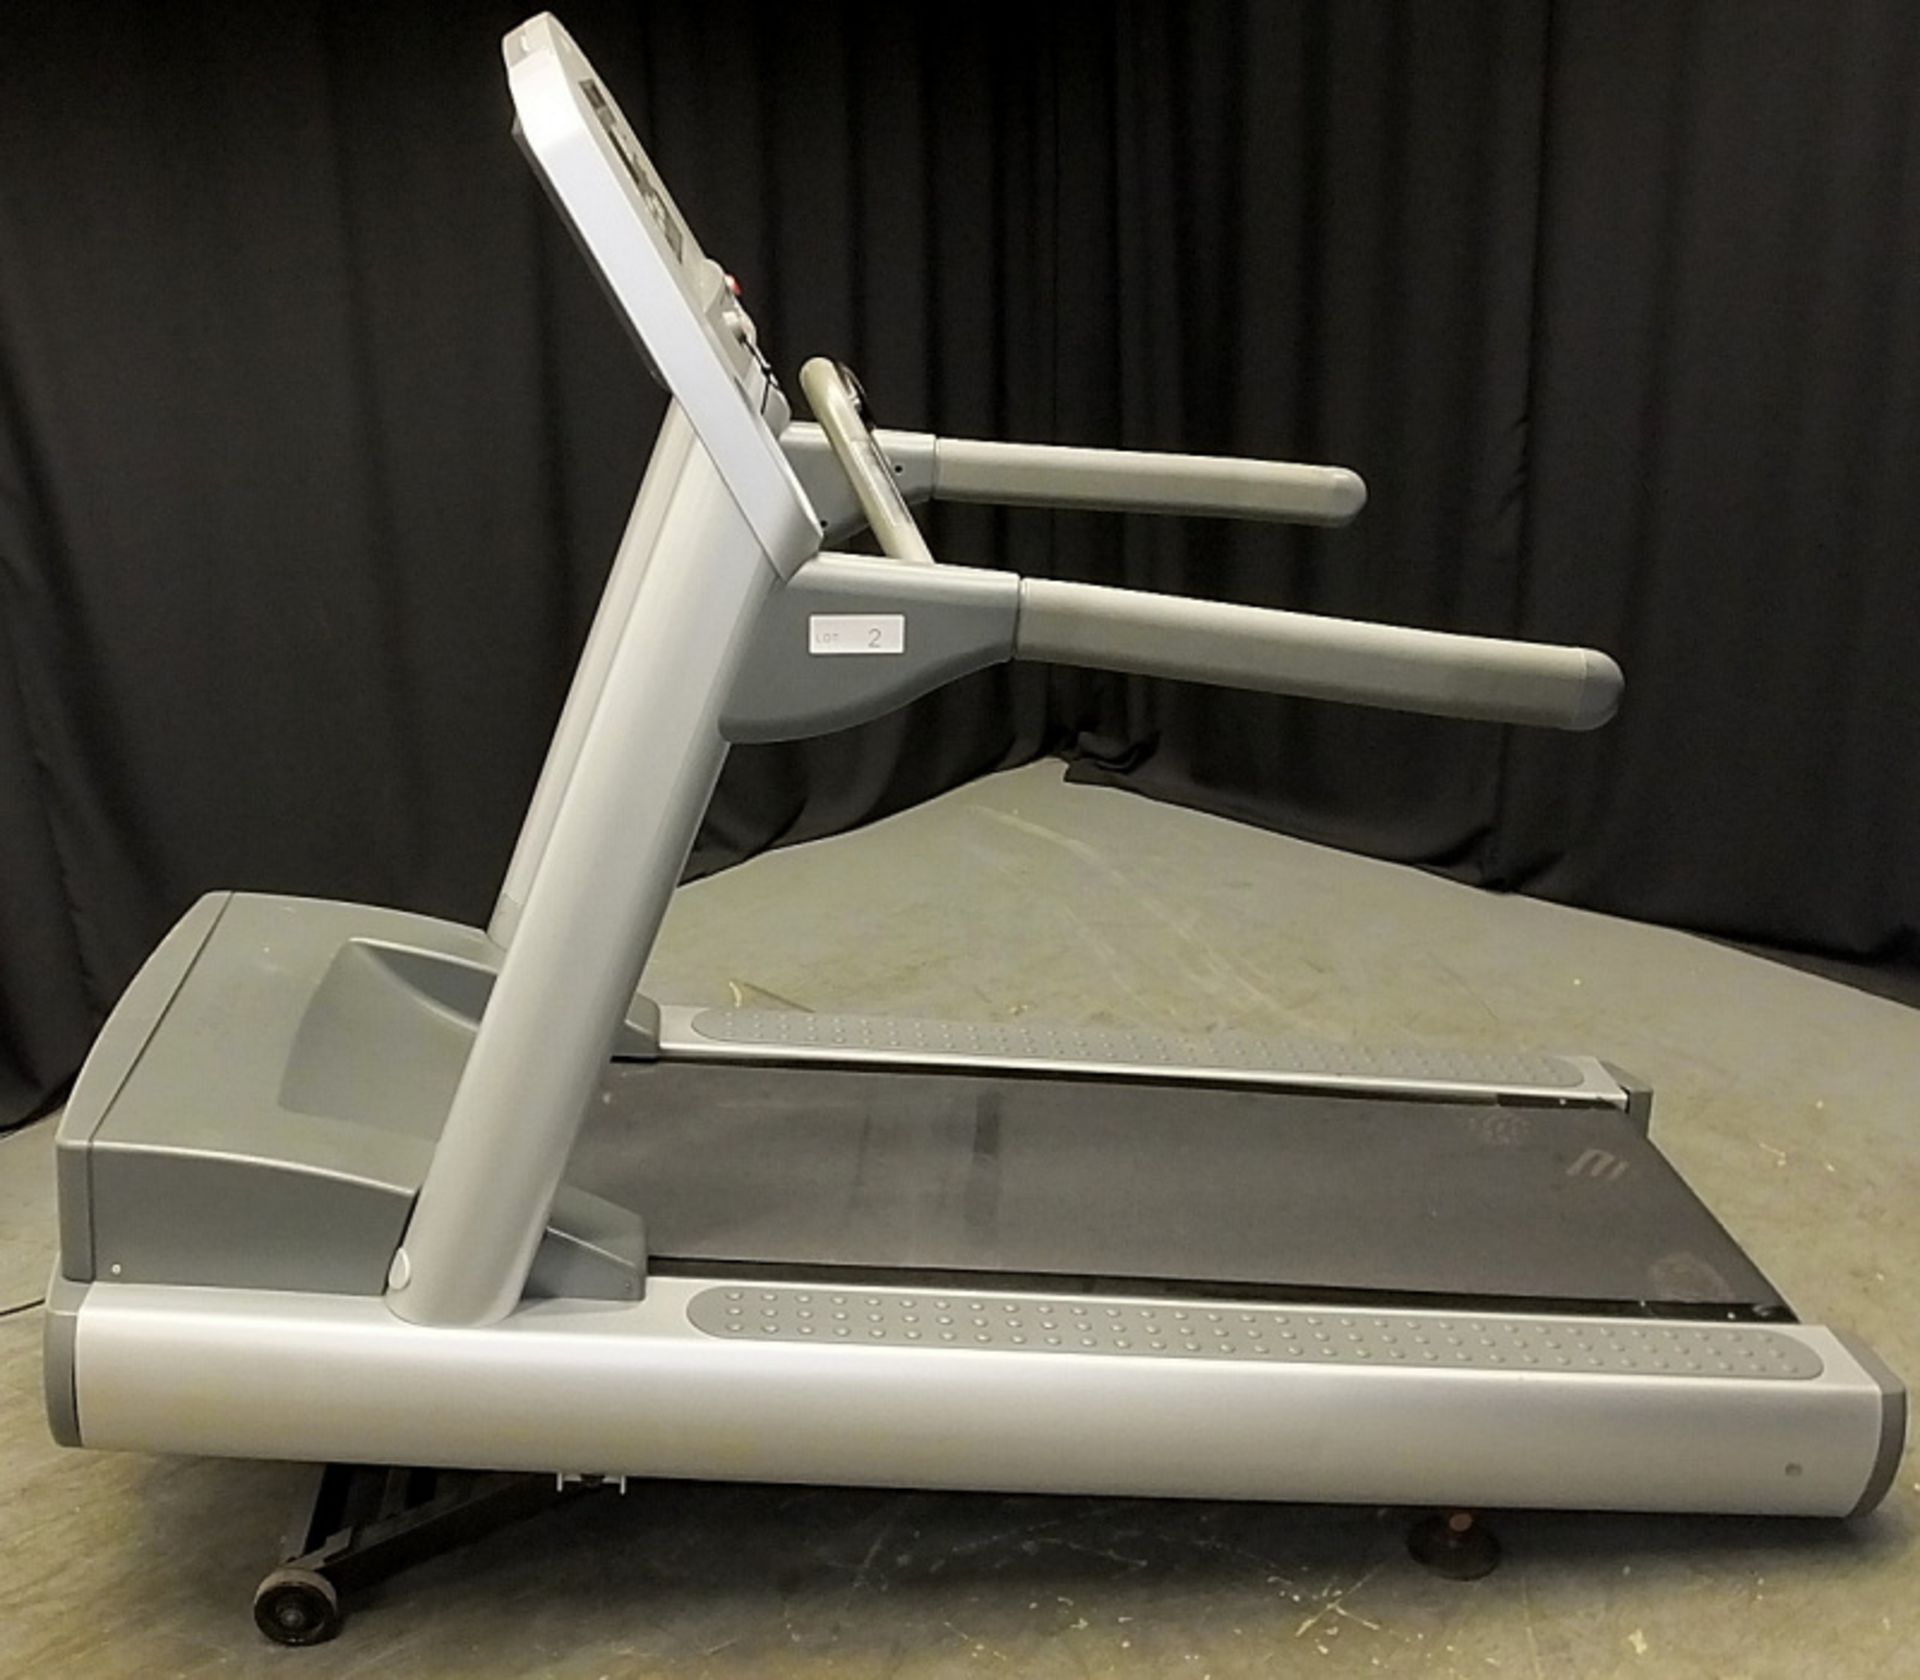 Life Fitness 95TI Treadmill - L2115 x D930mm - Image 3 of 12